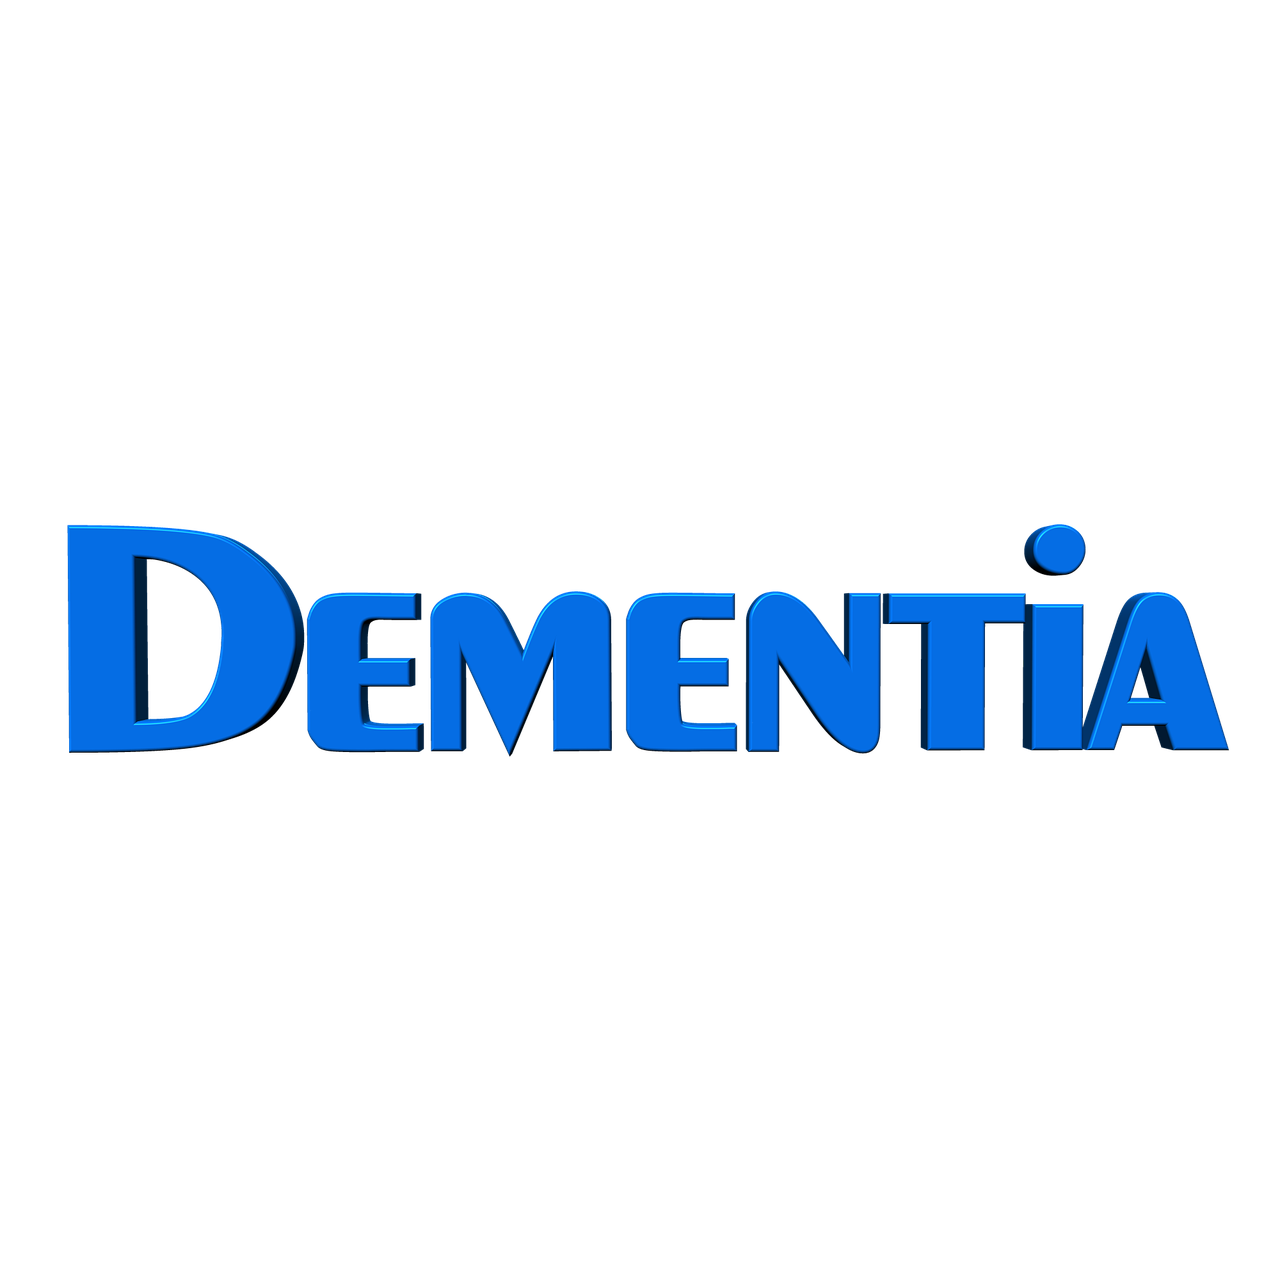 dementia alzheimer's disease free photo